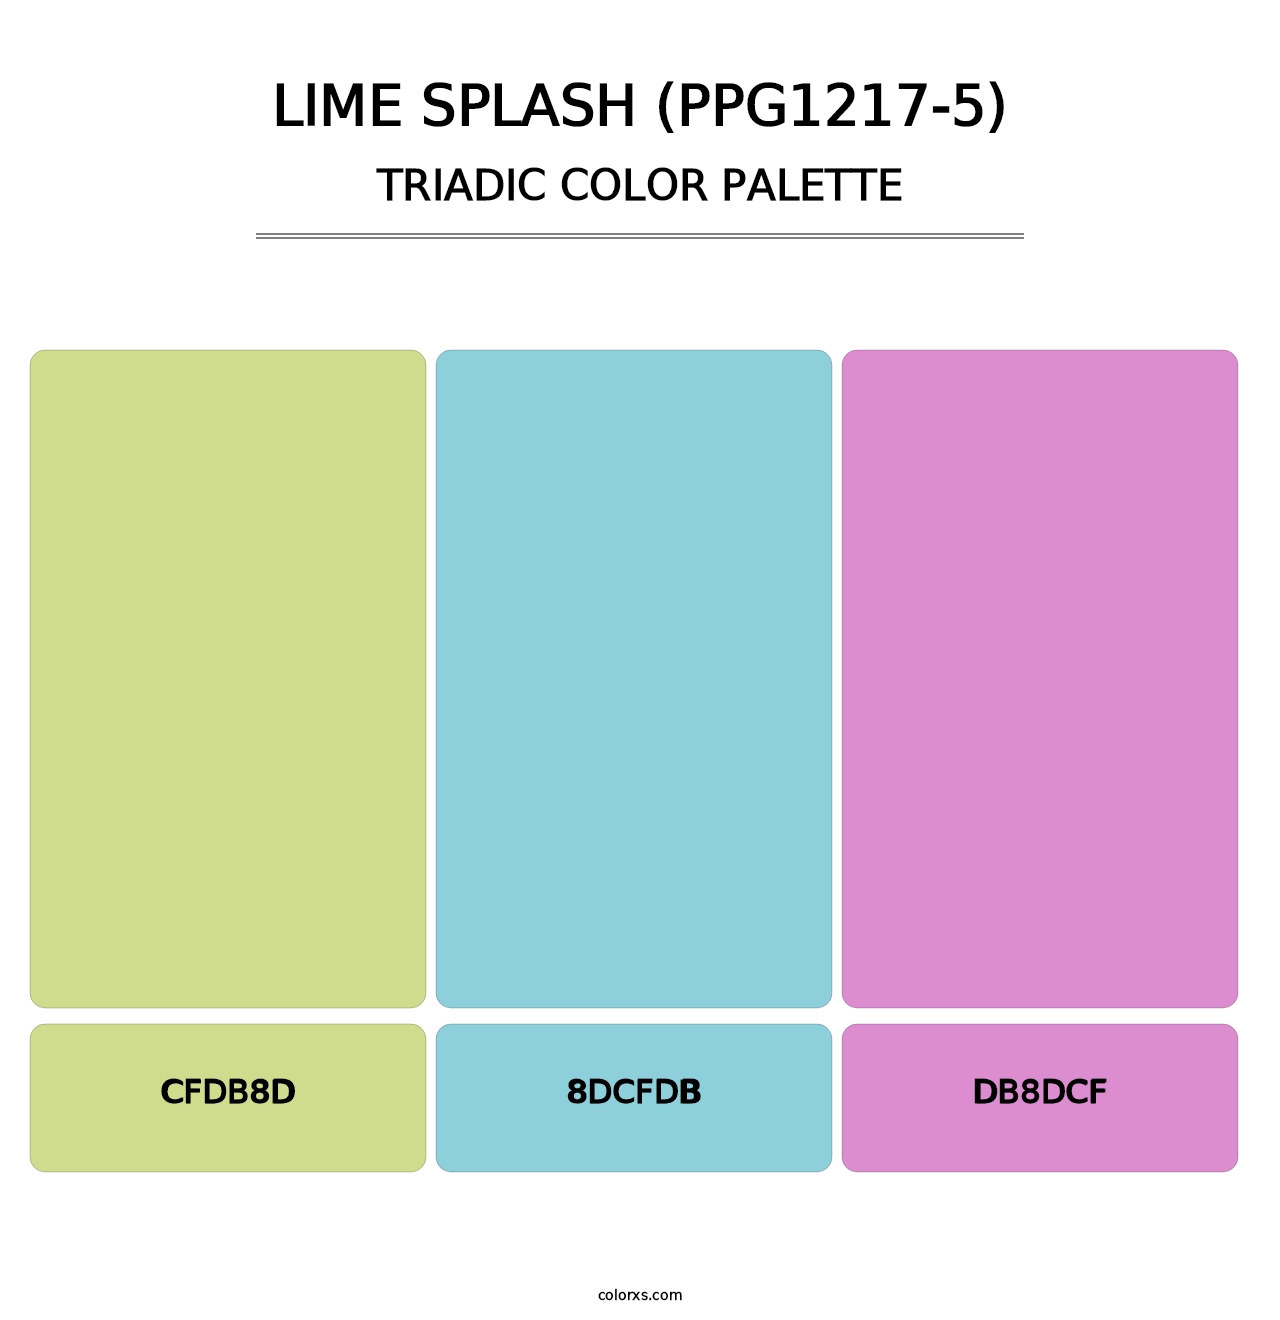 Lime Splash (PPG1217-5) - Triadic Color Palette